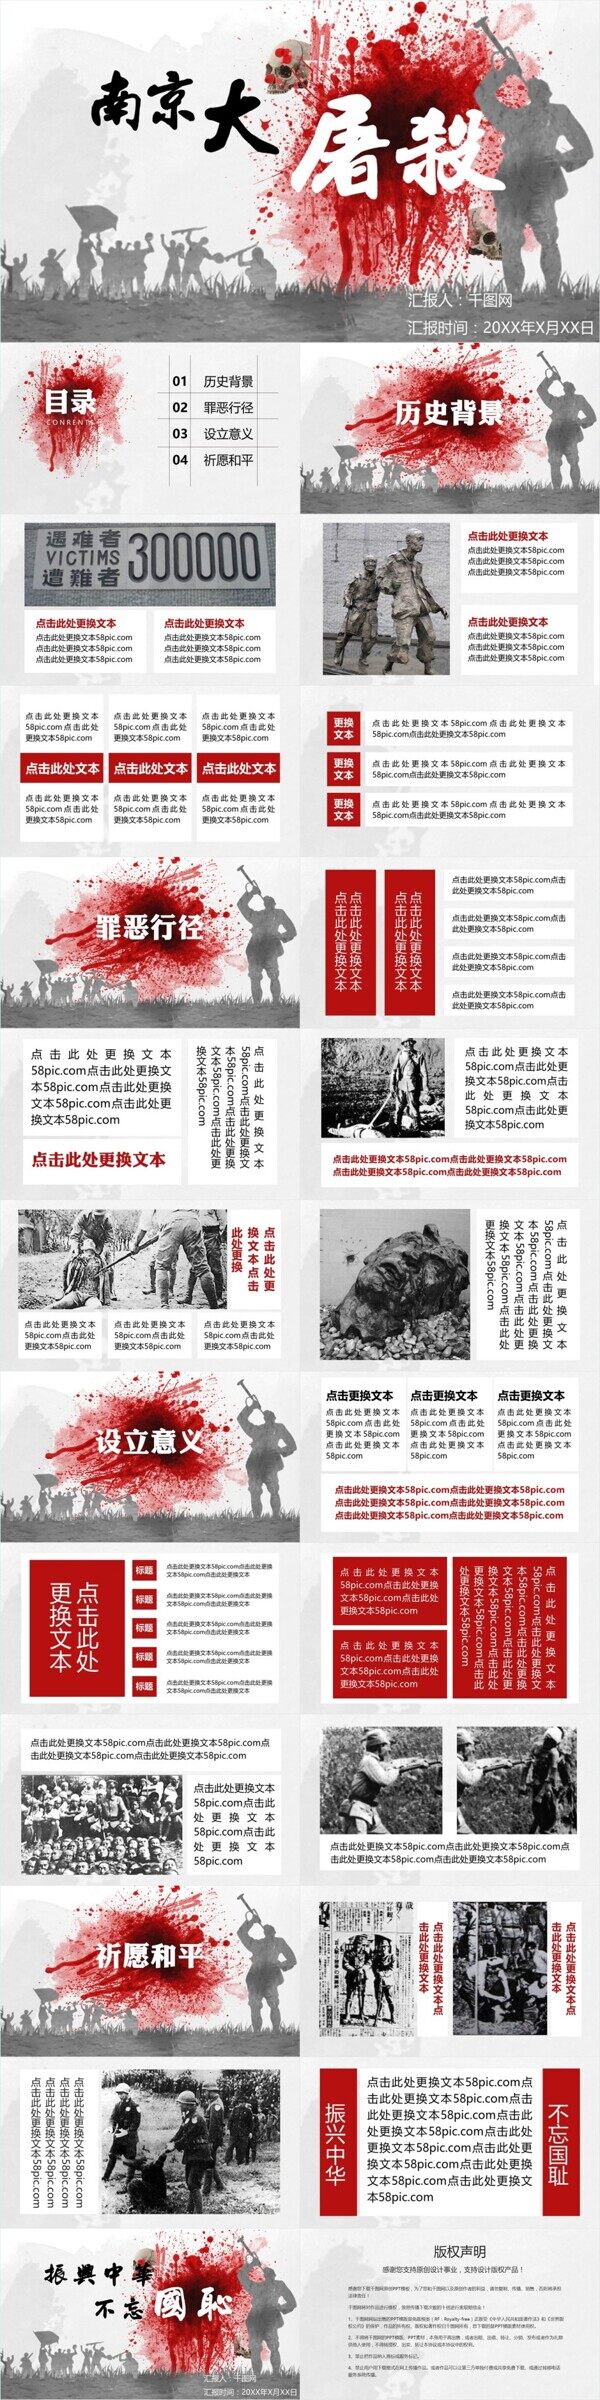 红块南京大屠杀纪念学习PPT模板